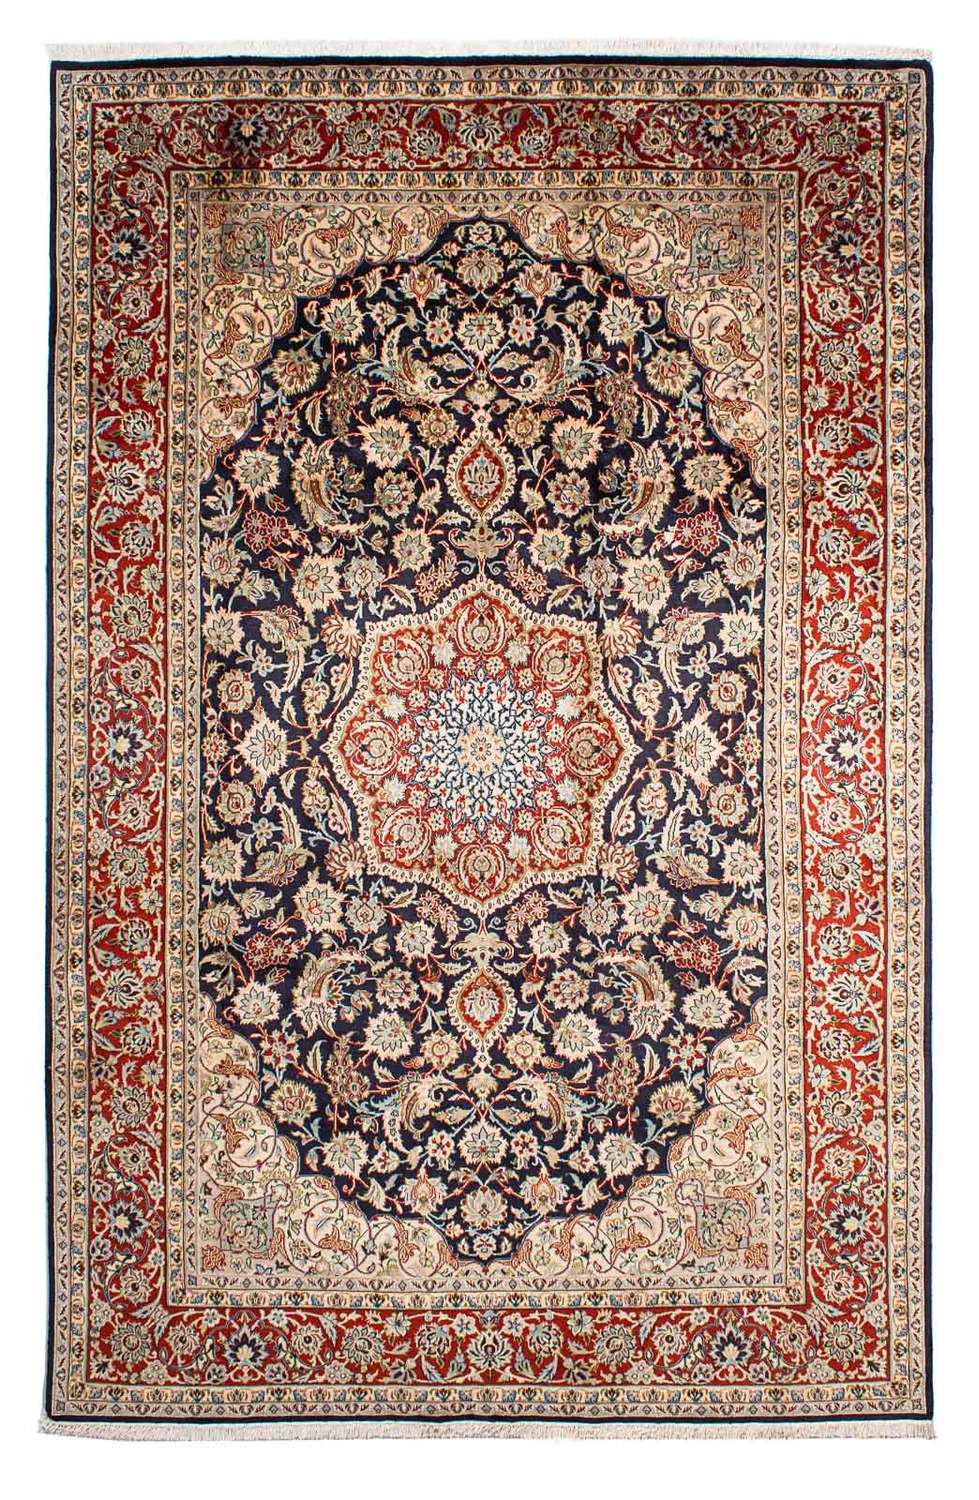 Tapis persan - Classique - 300 x 196 cm - bleu foncé